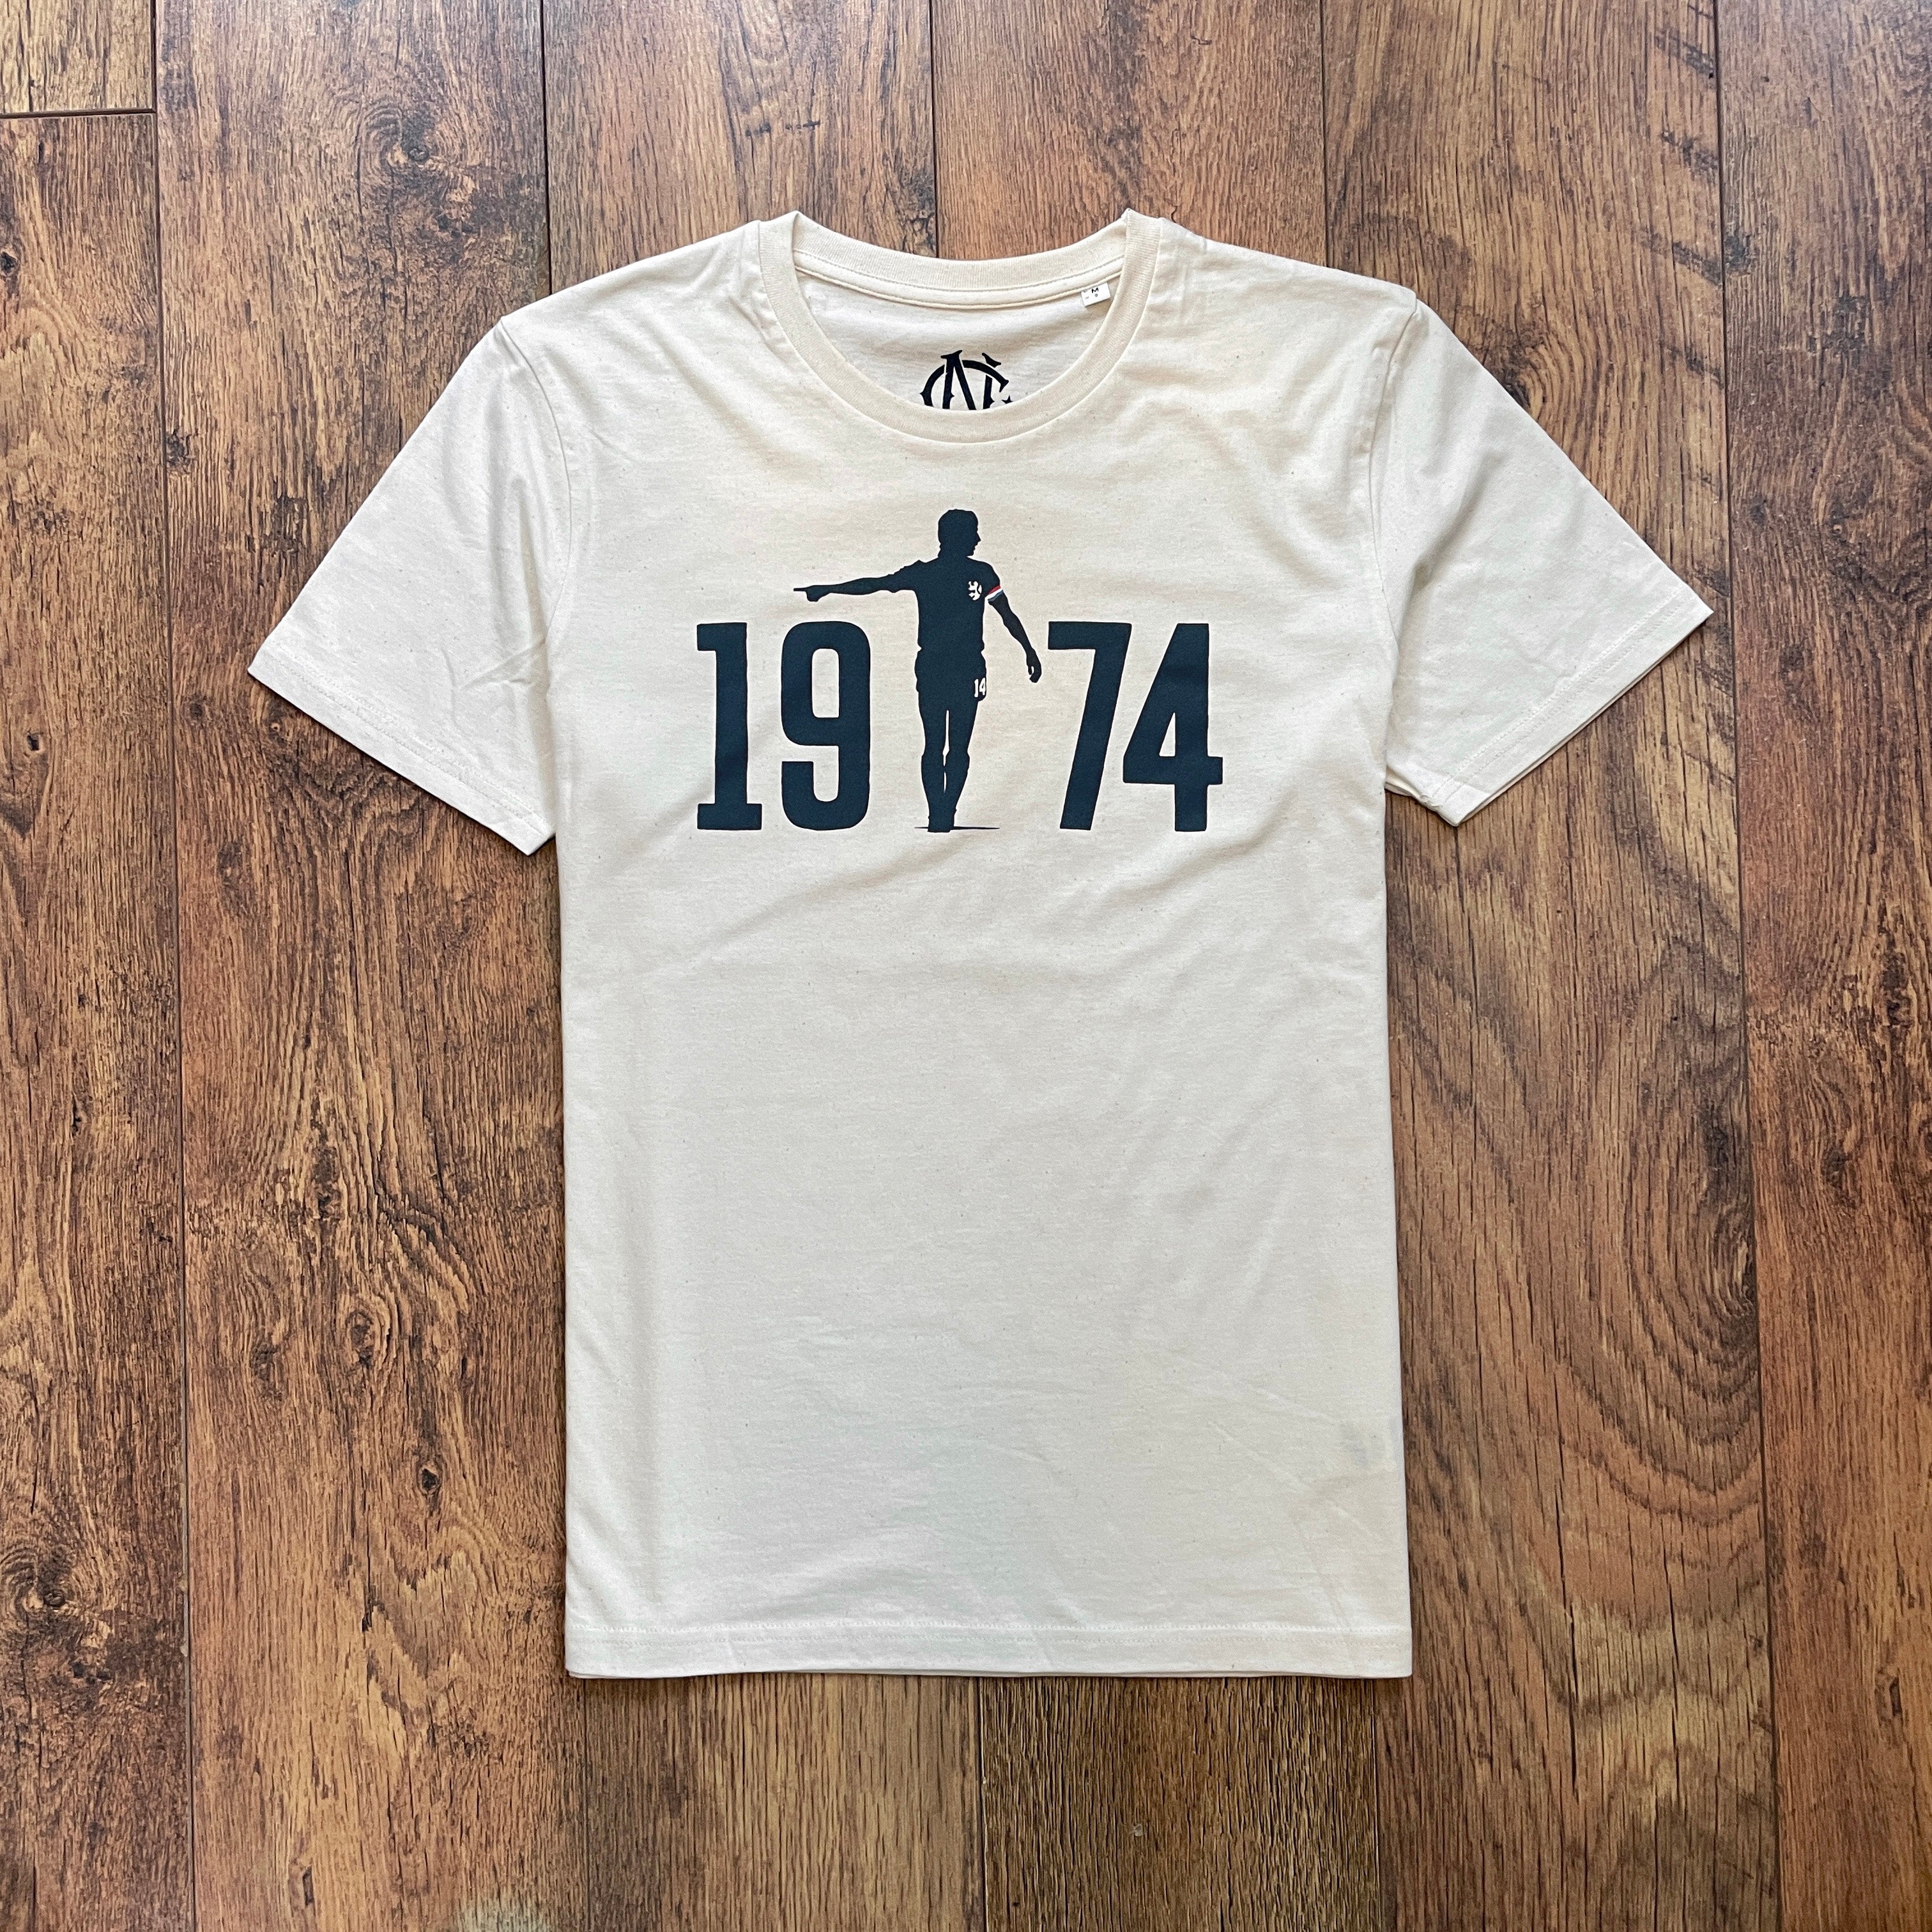 Holland Netherlands Cruyff 1974 football shirt t-shirt